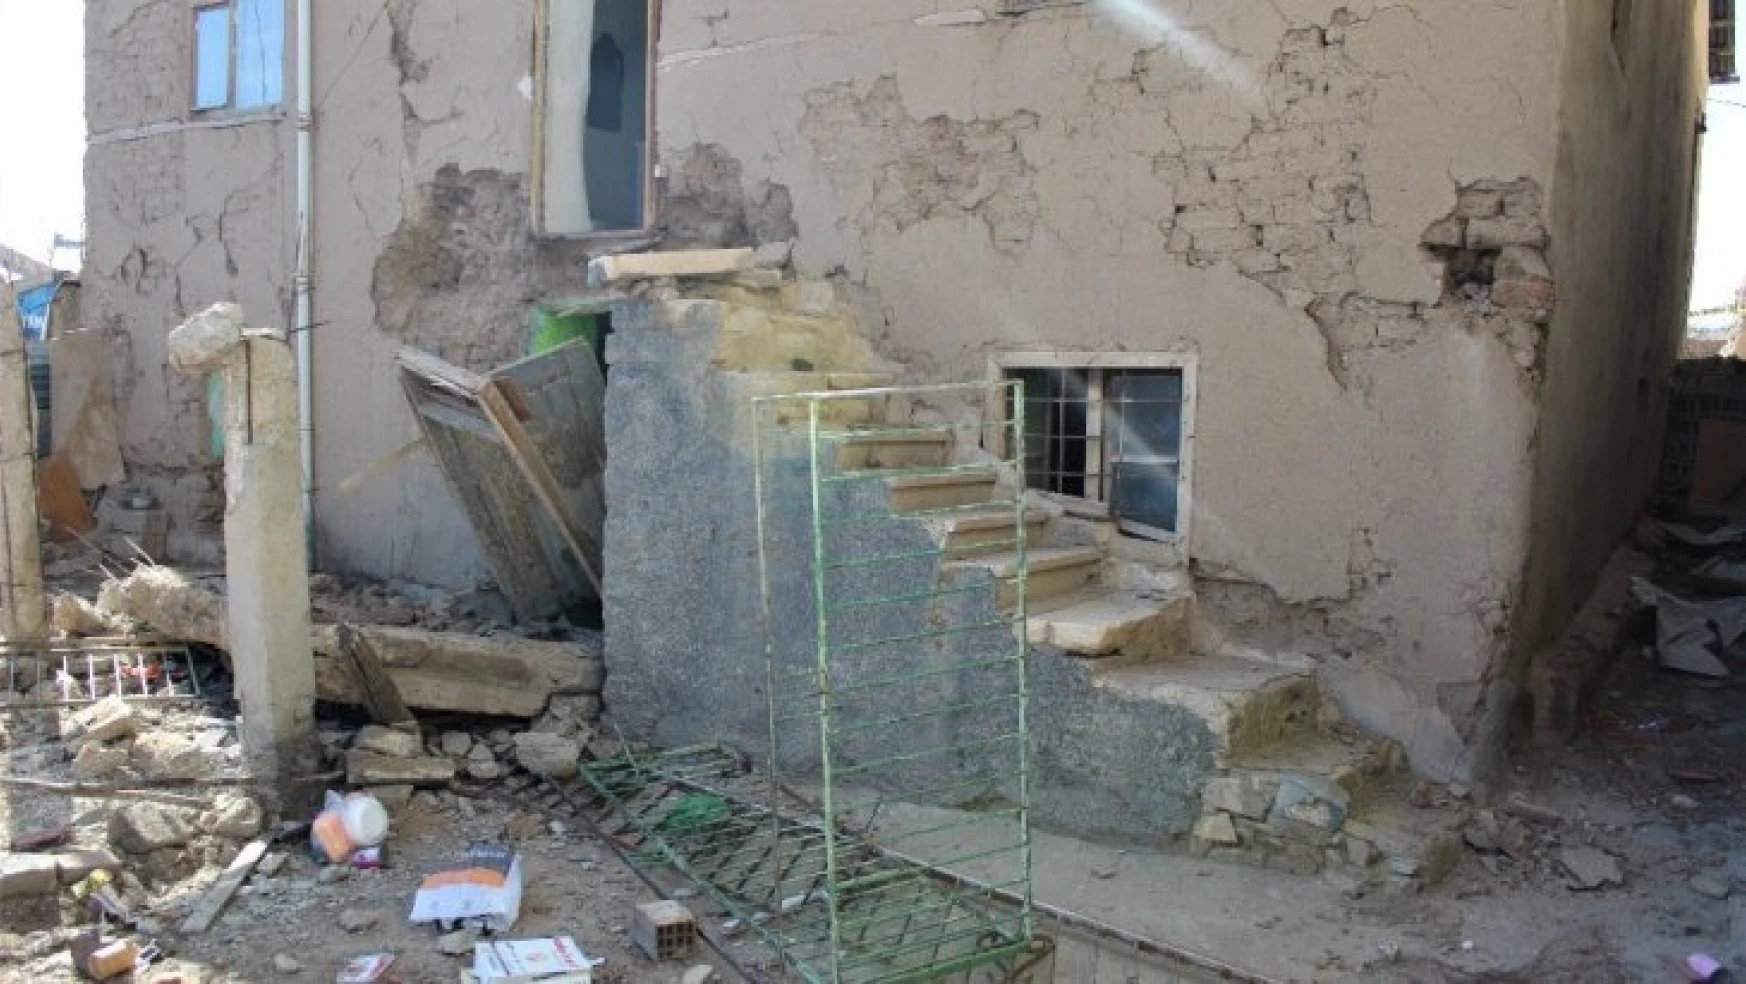 Elazığ'da hasarlı kerpiç evin balkonu yıkıldı: 1 ölü